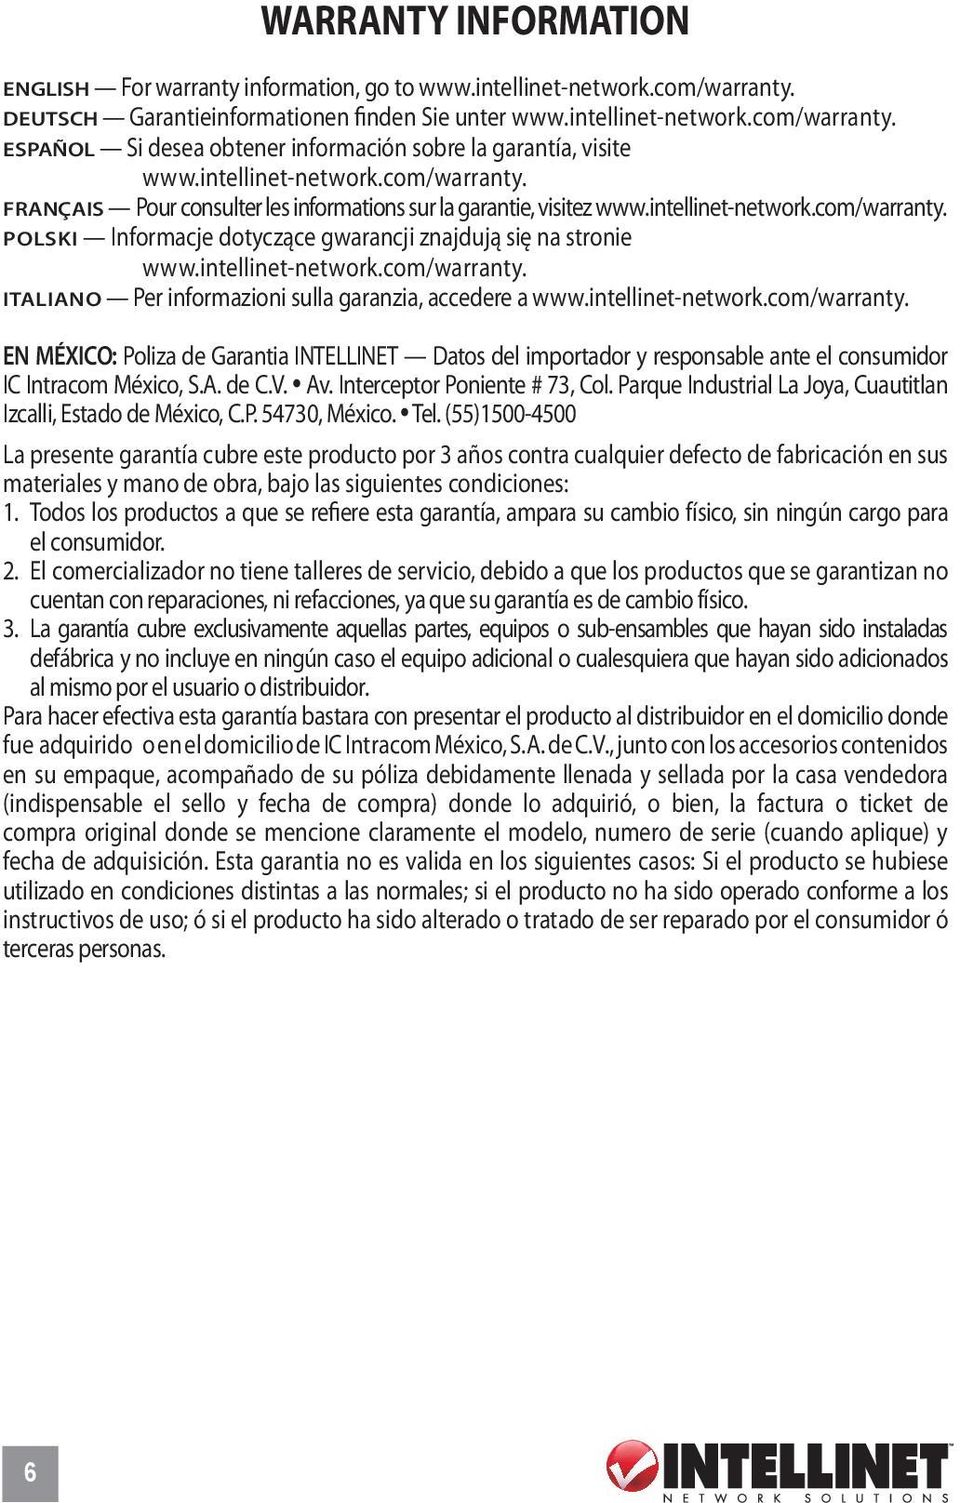 intellinet-network.com/warranty. Italiano Per informazioni sulla garanzia, accedere a www.intellinet-network.com/warranty. EN MéXICO: Poliza de Garantia INTELLINET Datos del importador y responsable ante el consumidor IC Intracom México, S.